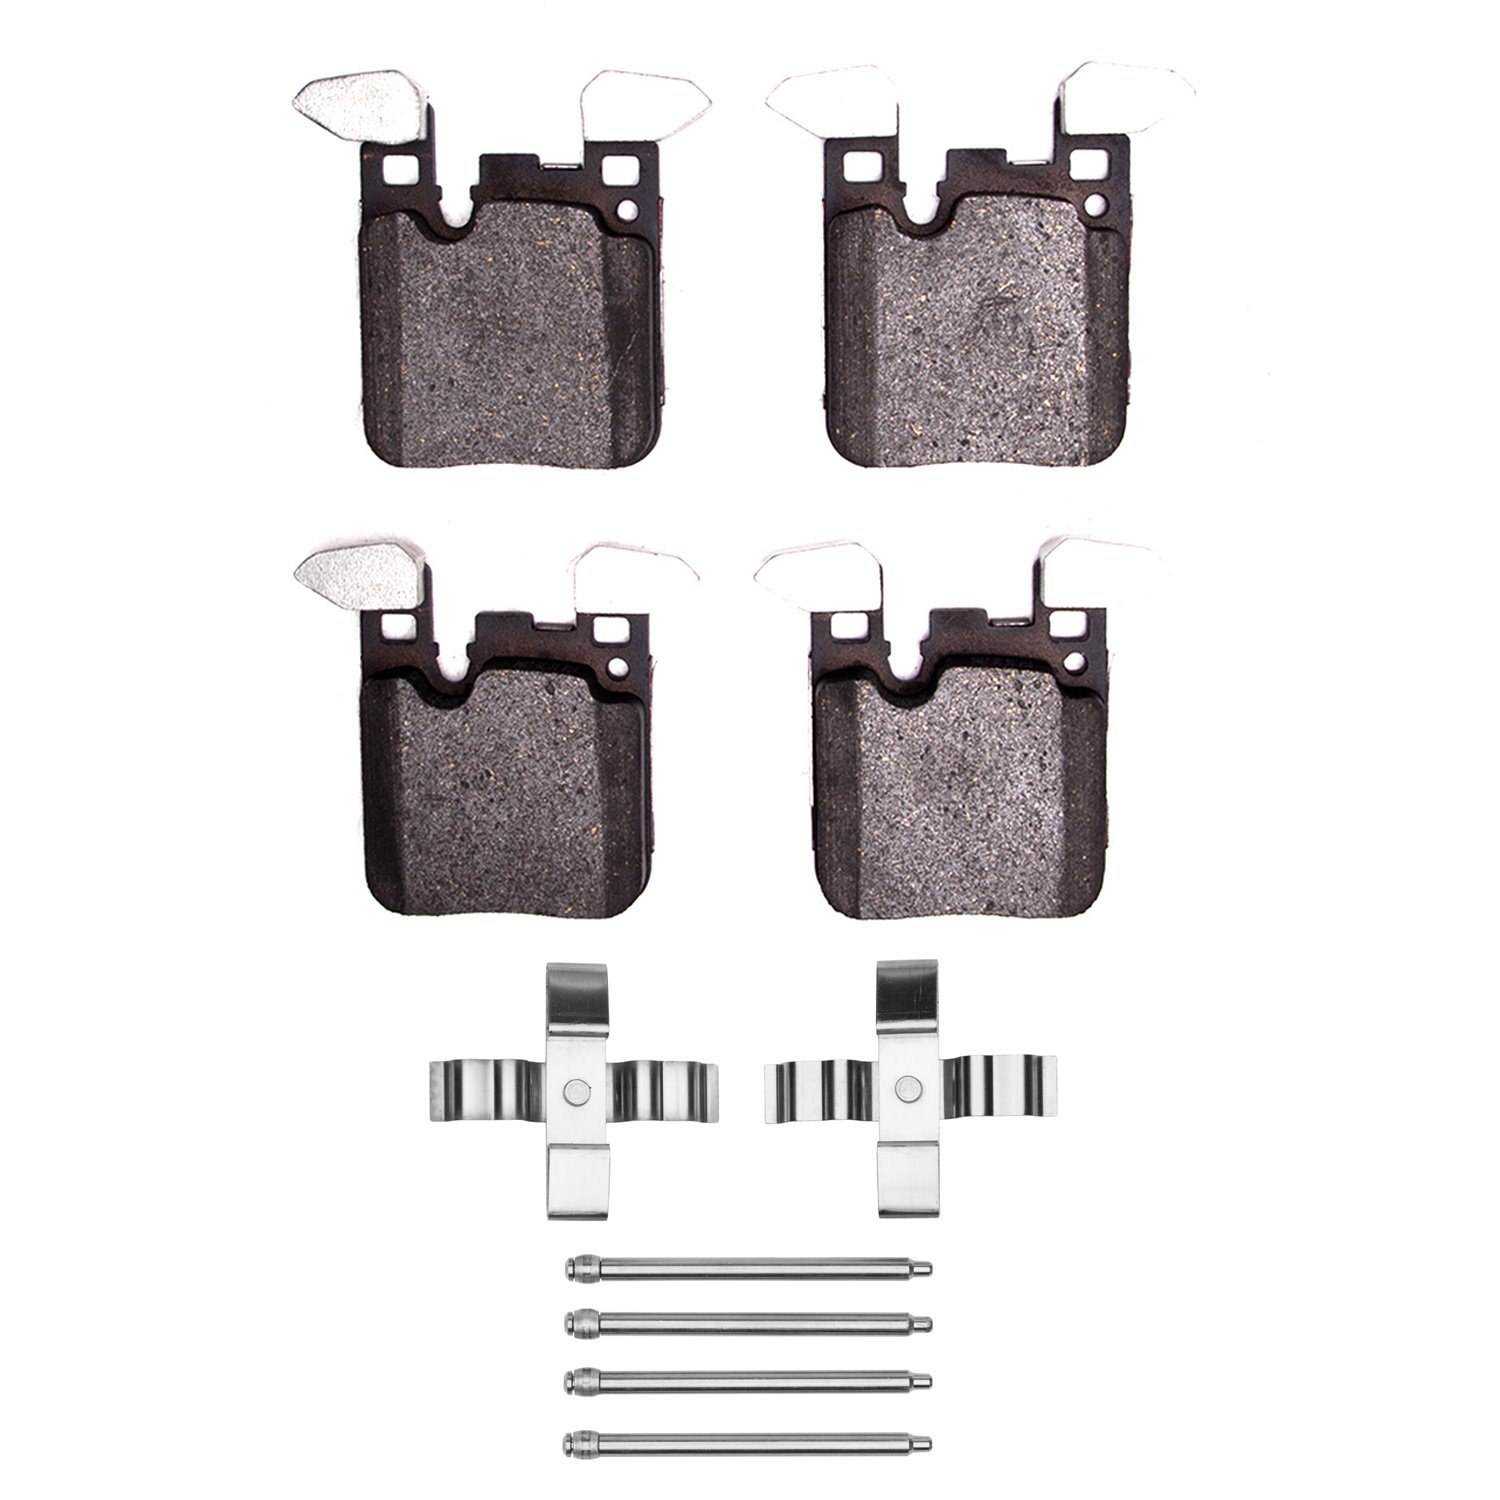 1310-1656-01 3000-Series Ceramic Brake Pads & Hardware Kit, 2012-2021 BMW, Position: Rear